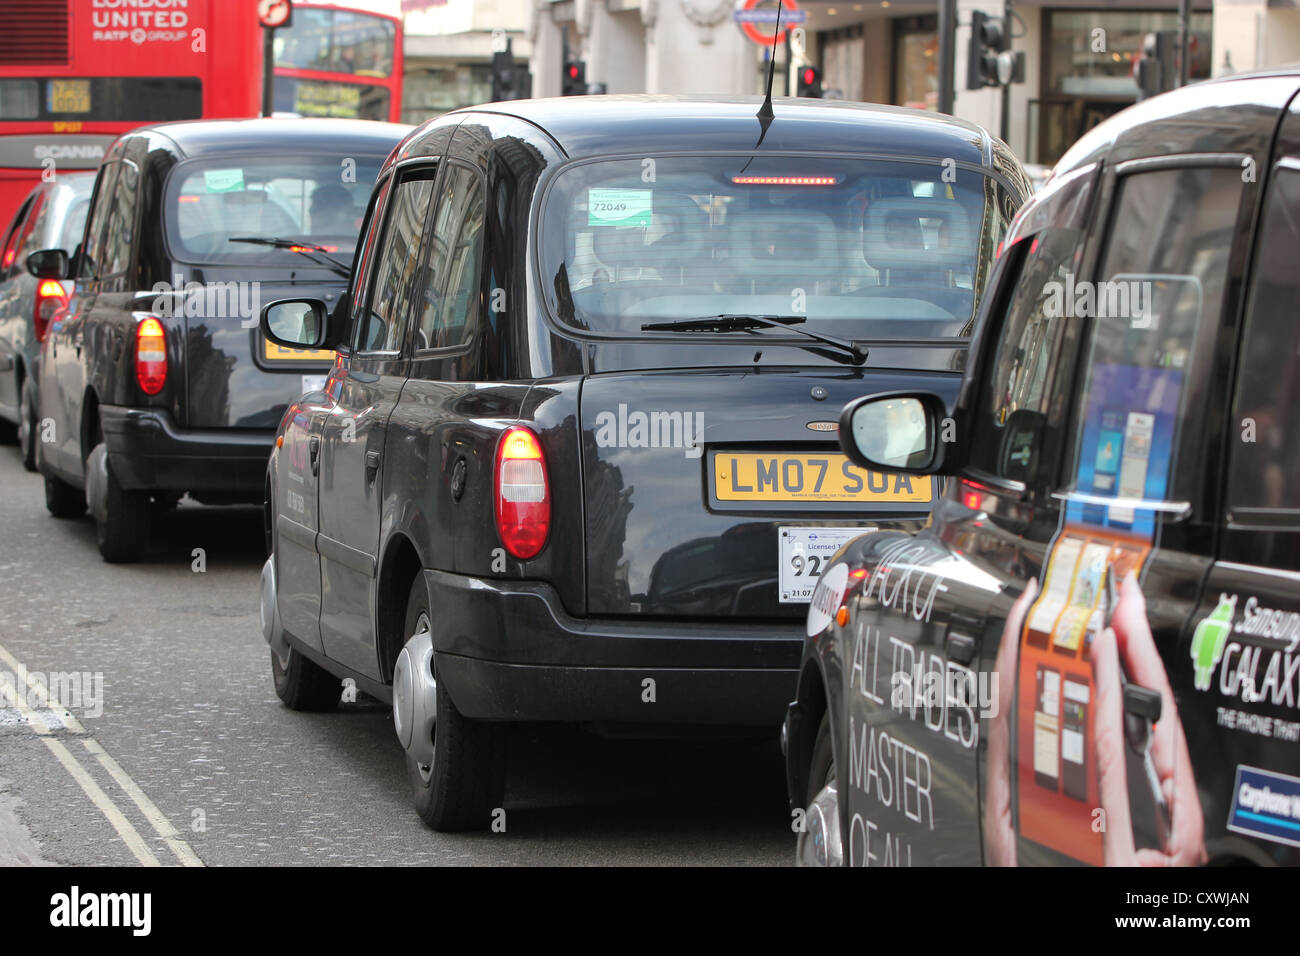 London, Londra, U.K., europe, taxi's in a line, traffic, street, photoarkive Stock Photo